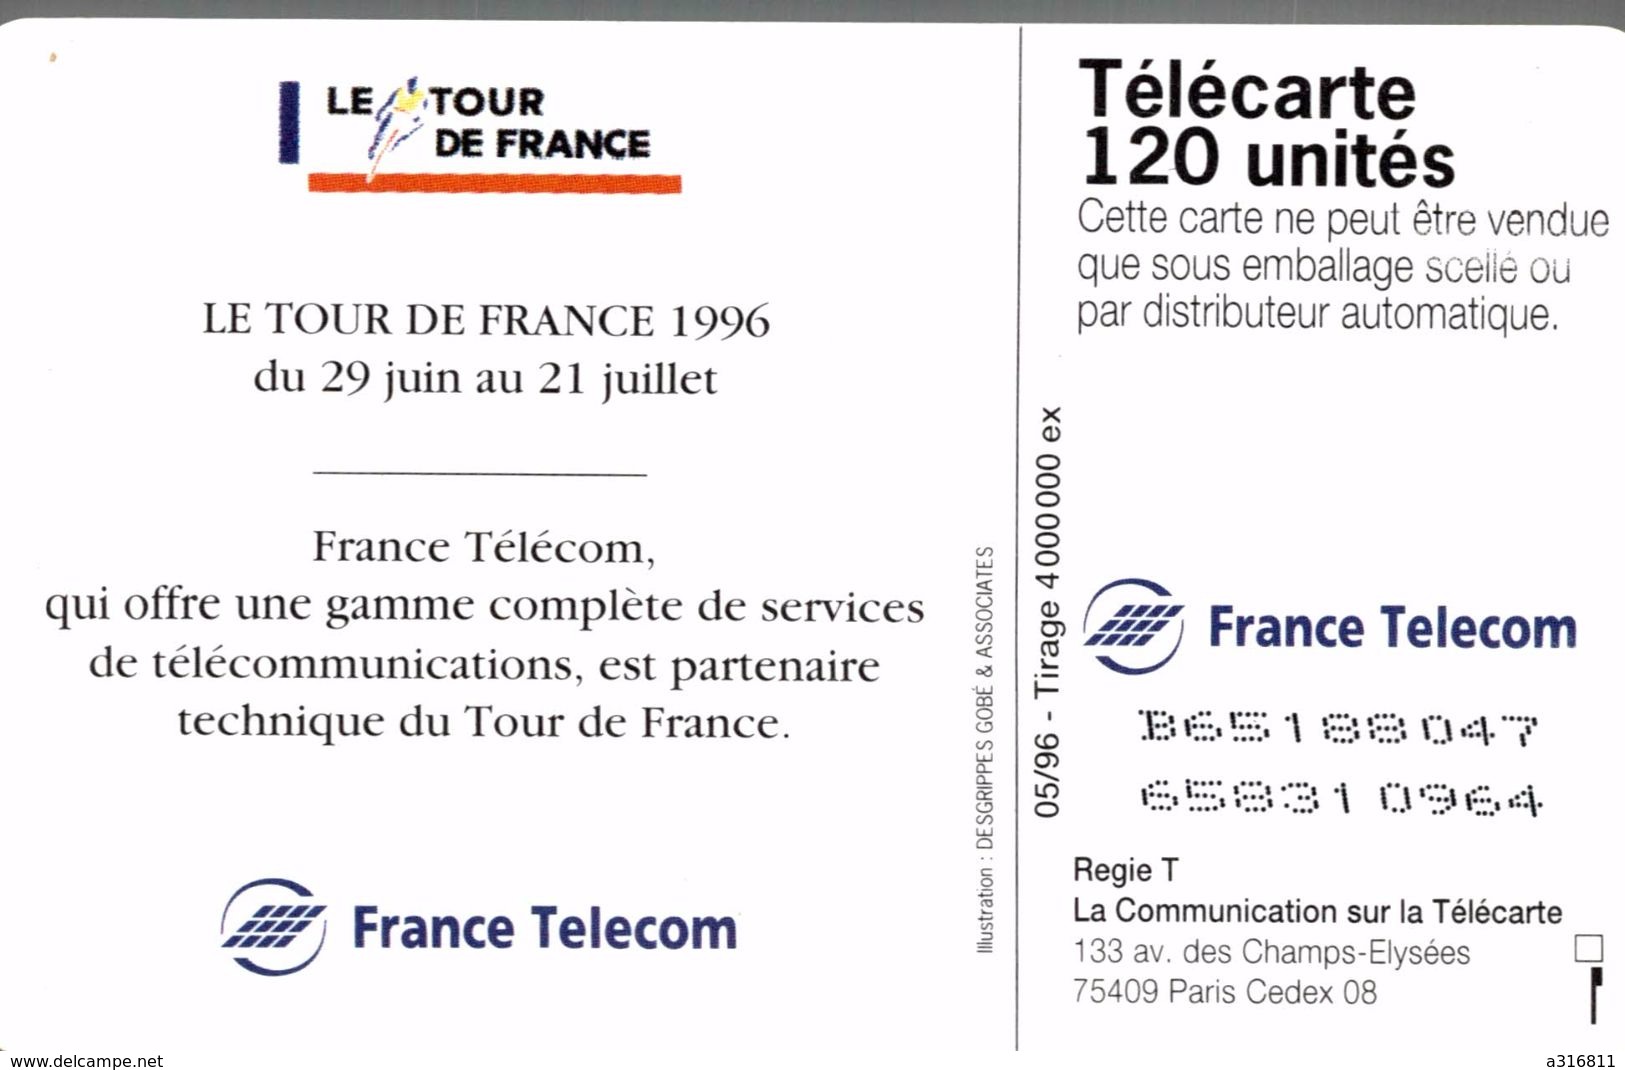 LE TOUR DE FRANCE 96 - 120 Einheiten